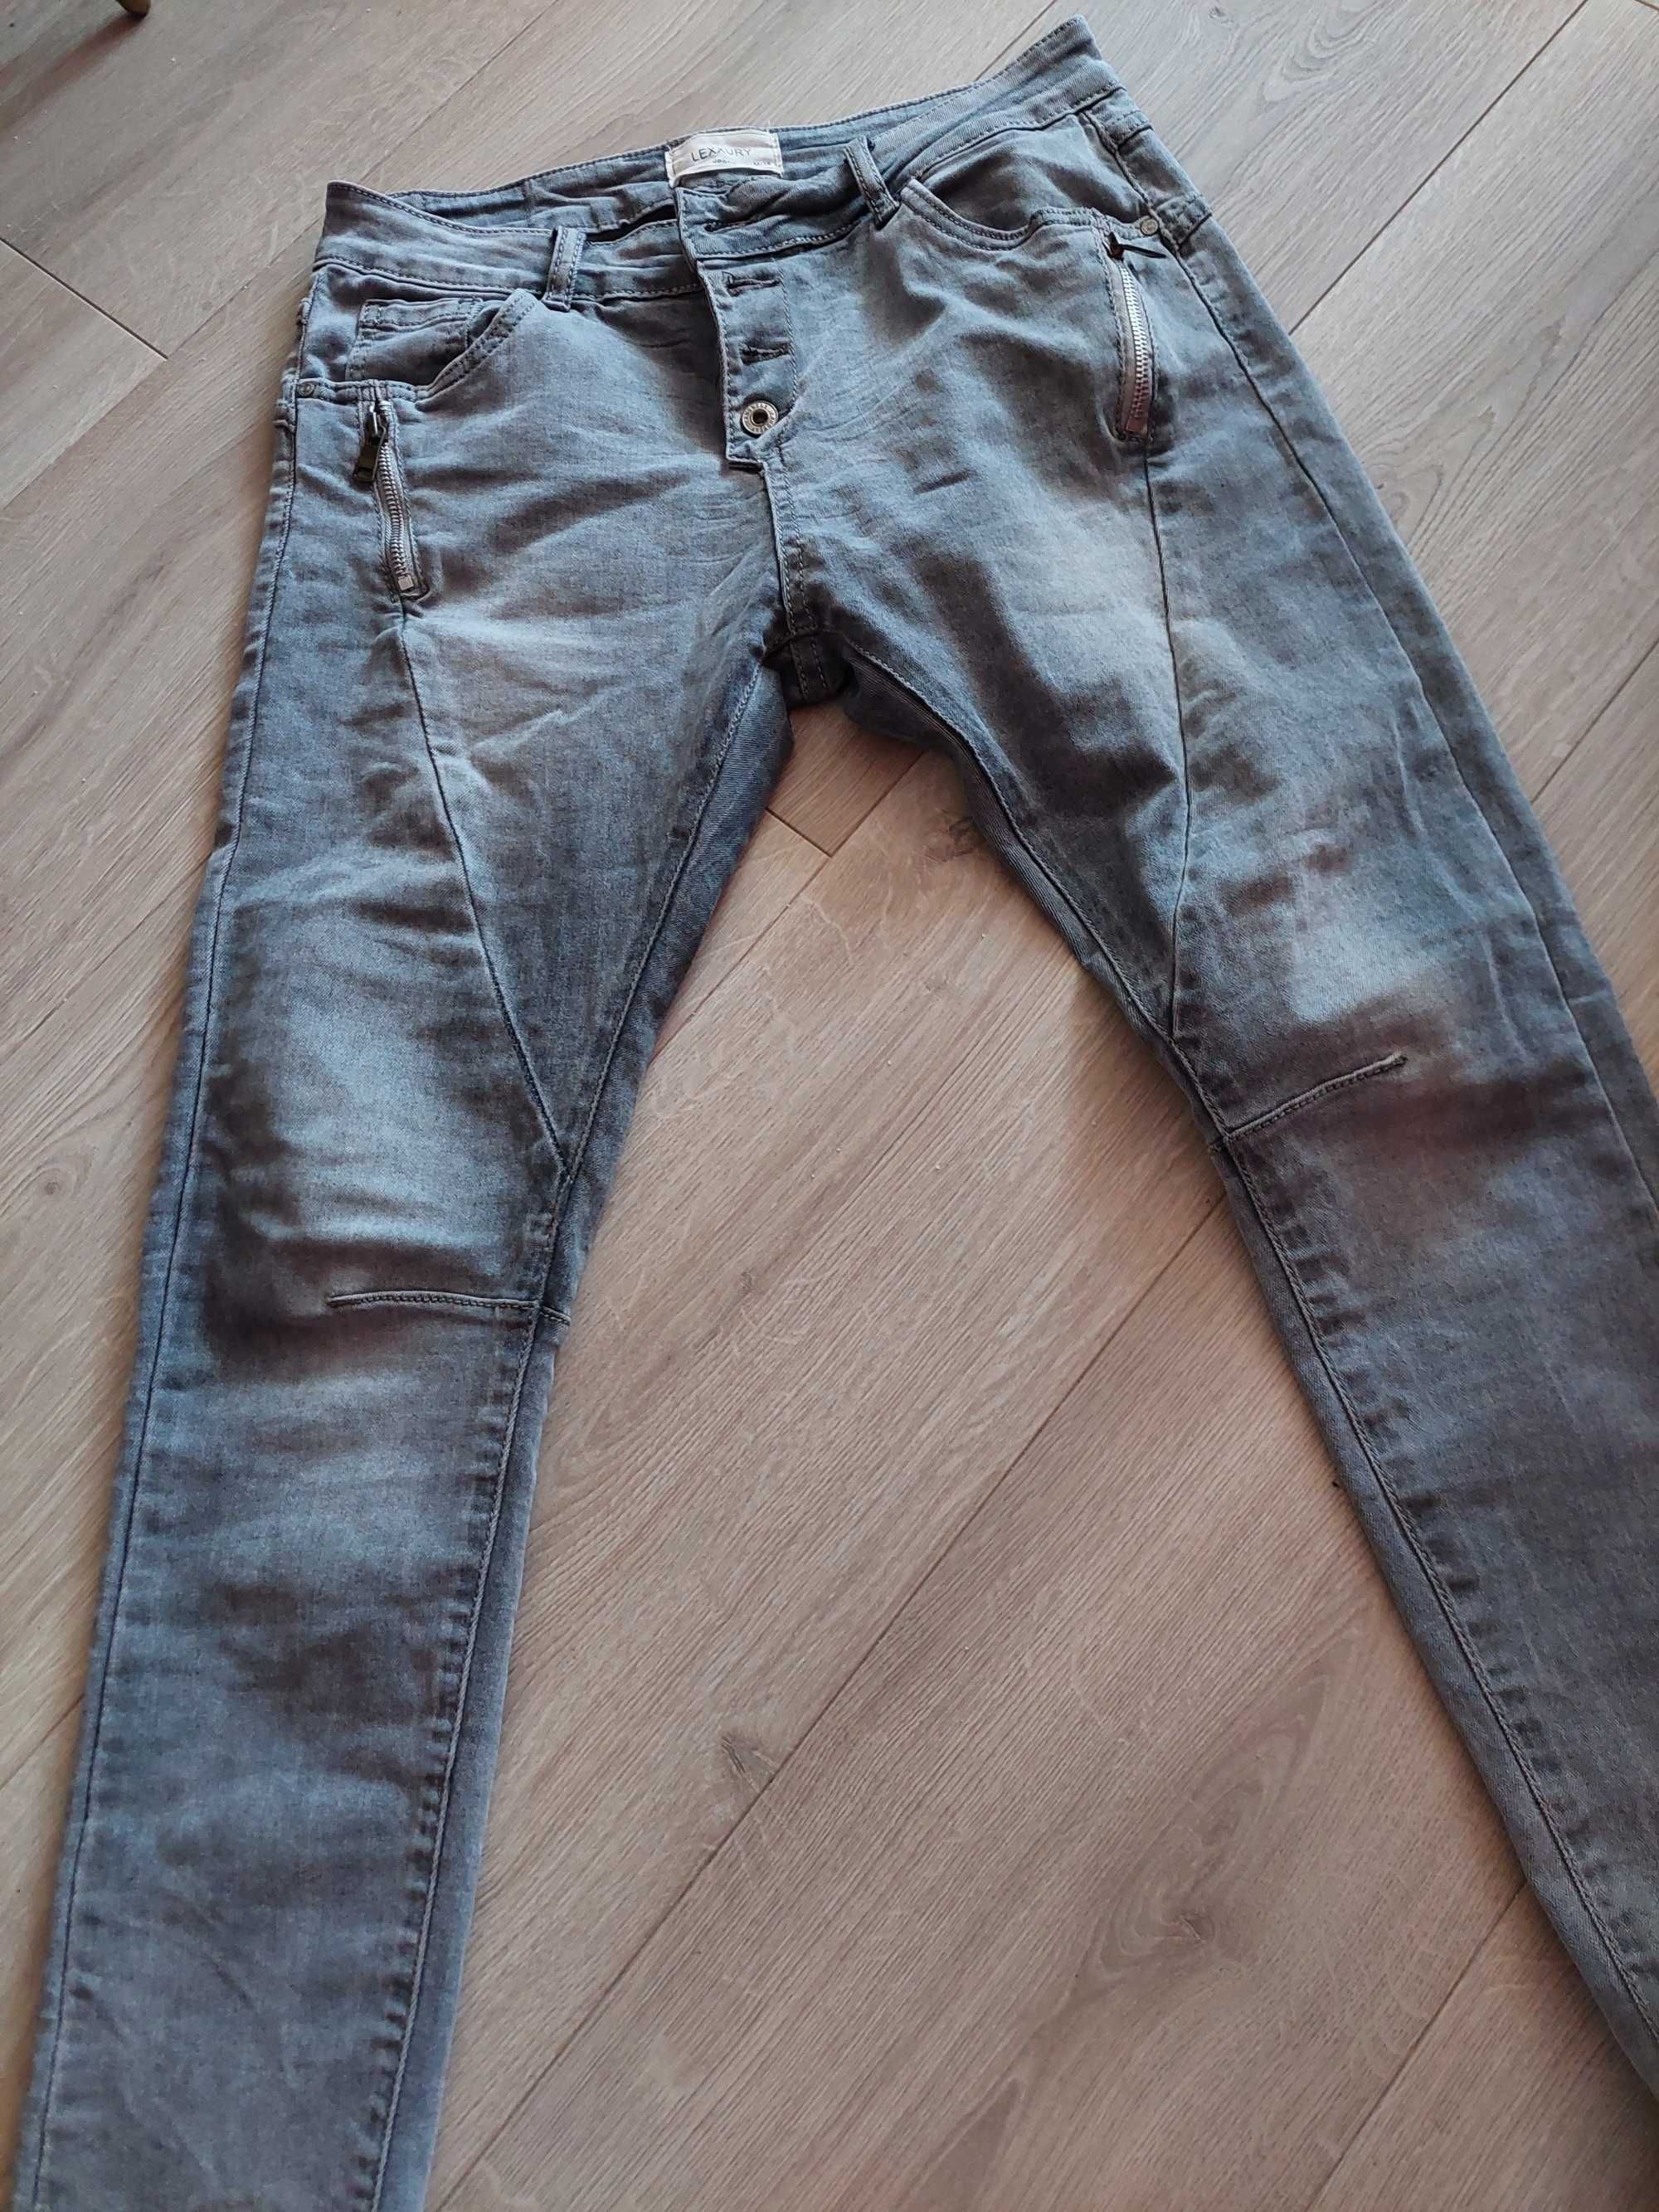 Spodnie damskie jeansy szare grafit rozmiar 38 LEXXURY jak nowe